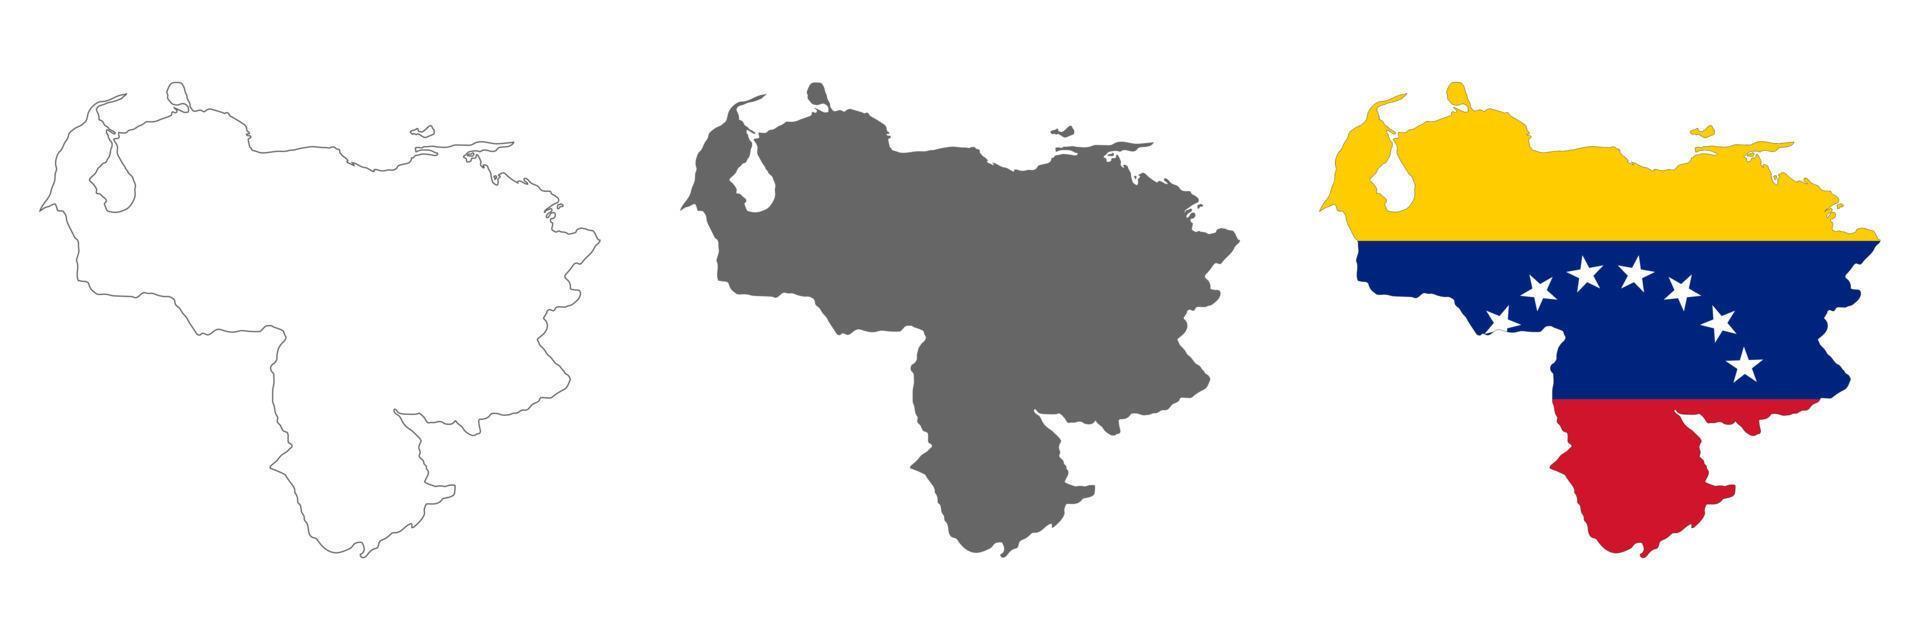 zeer gedetailleerde venezuela kaart met randen geïsoleerd op de achtergrond vector